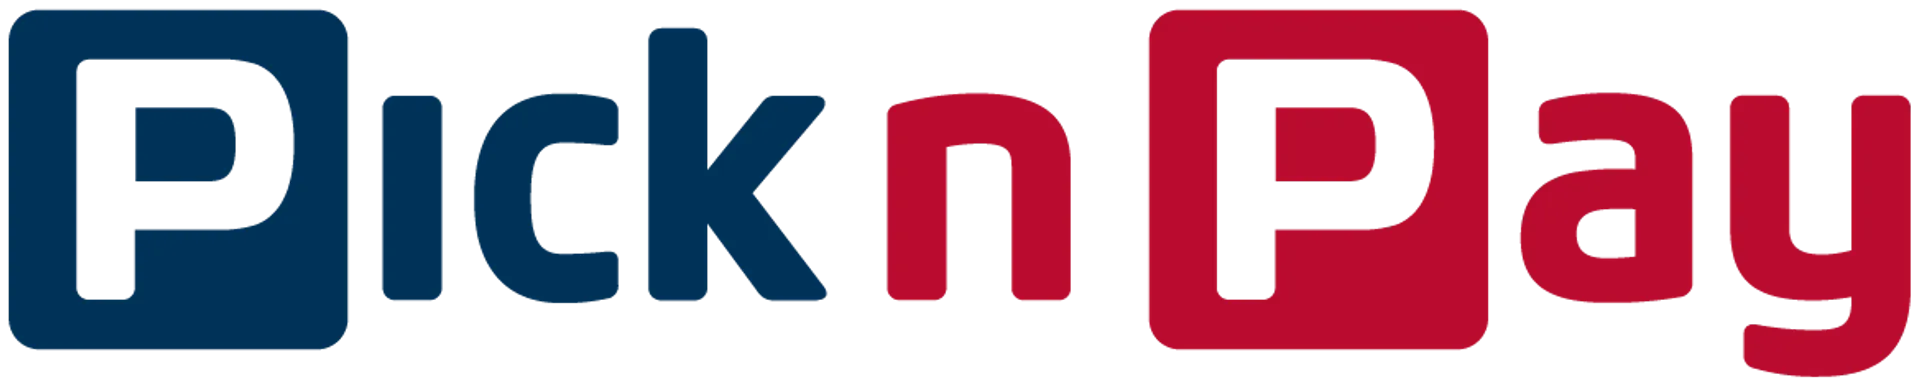 PICK N PAY logo